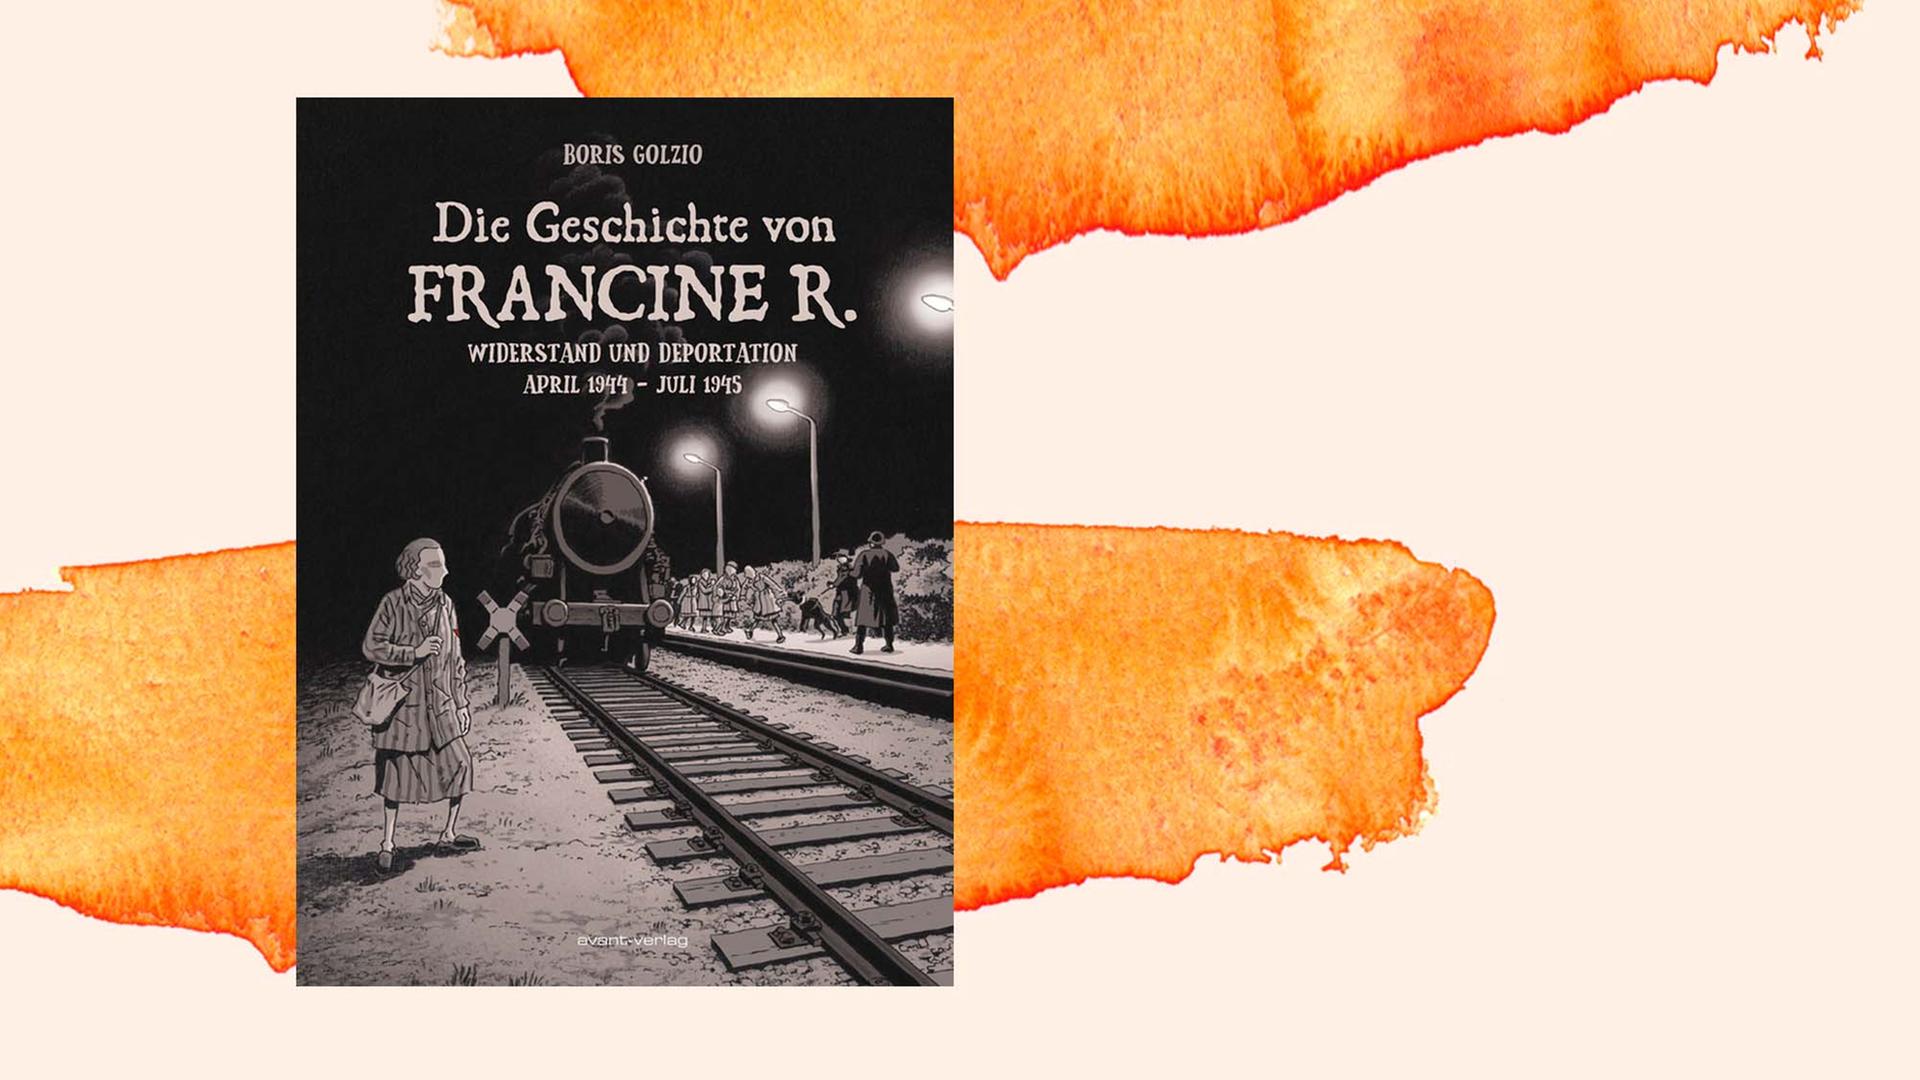 Buchcover von Boris Golzio: "Die Geschichte von Francine R.. Widerstand und Deportation April 1944 – Juli 1945"